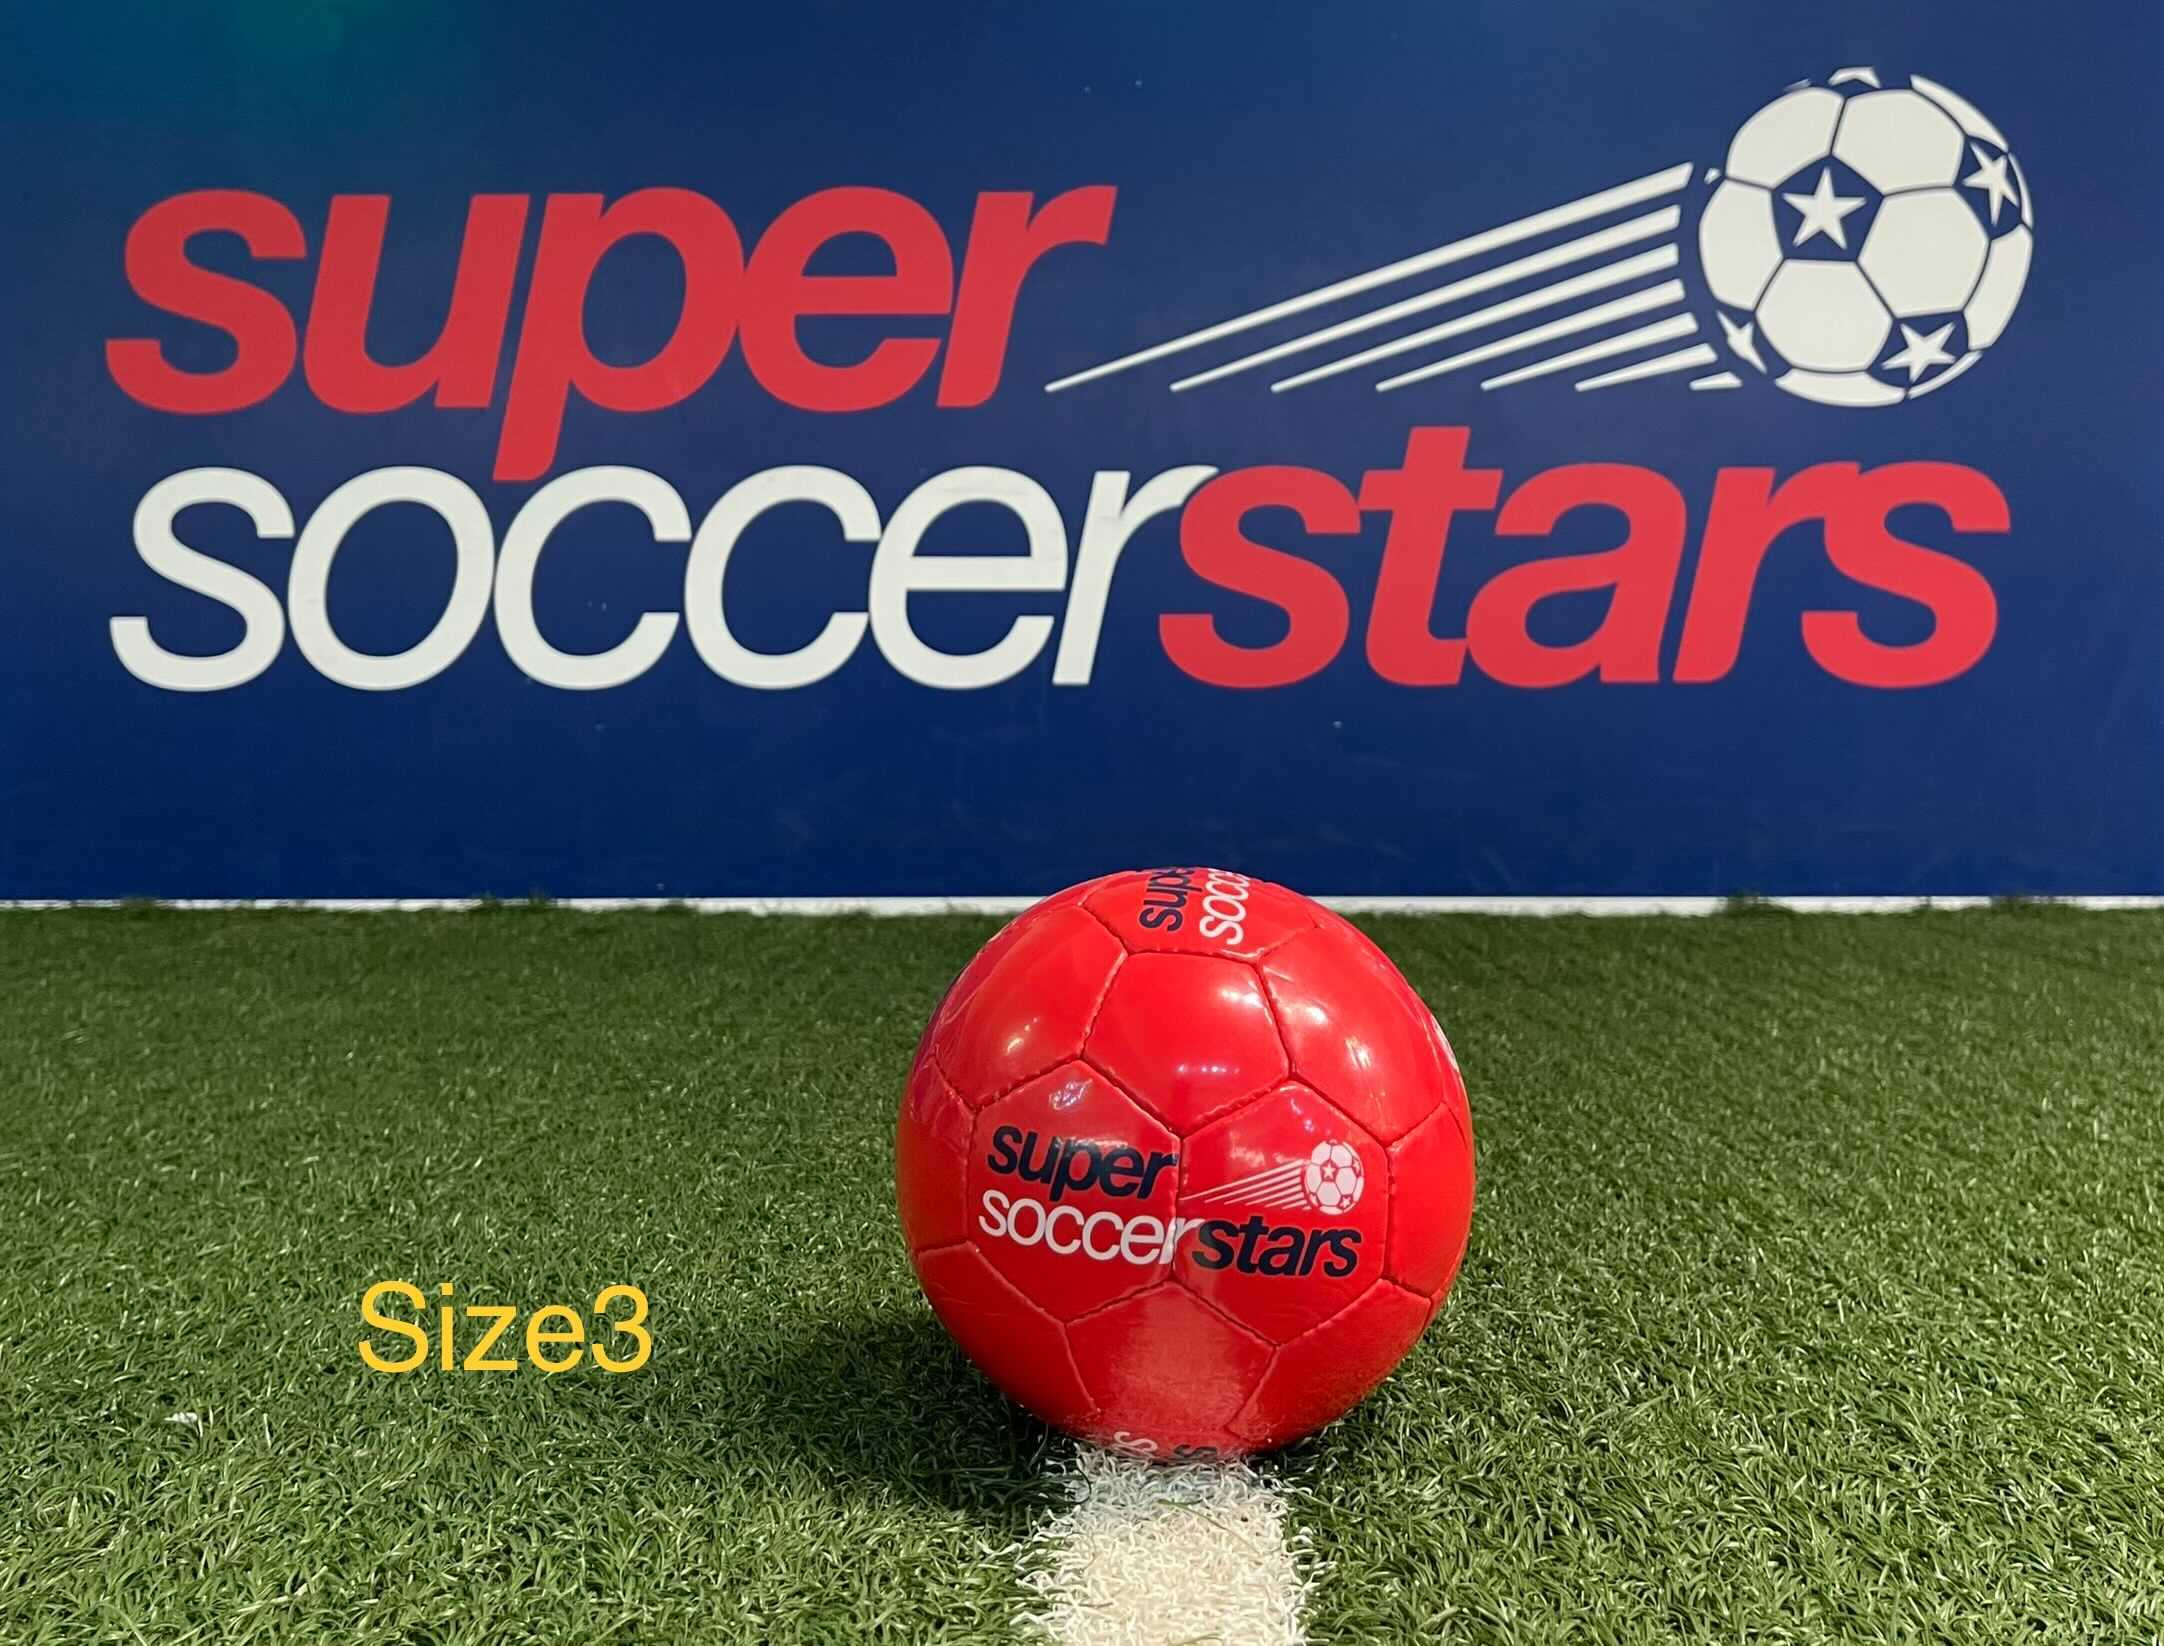 Super Soccer Stars